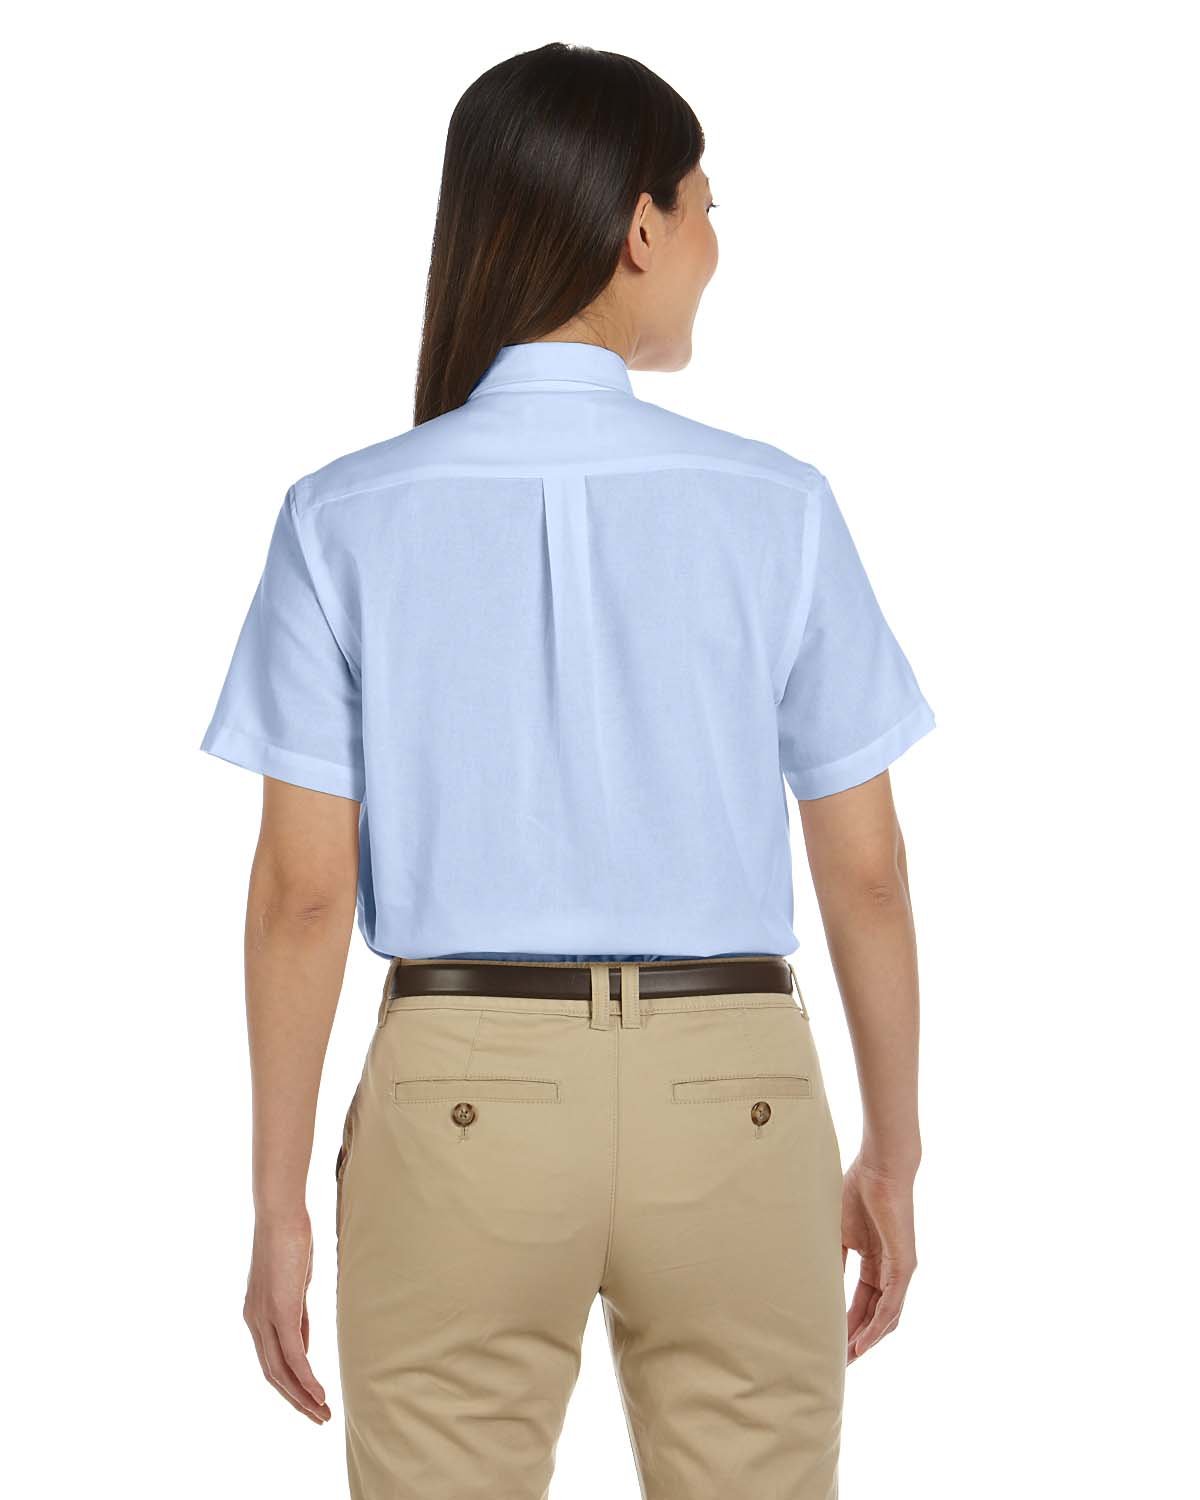 Van Heusen Ladies Short Sleeve Wrinkle Resistant Oxford Shirt